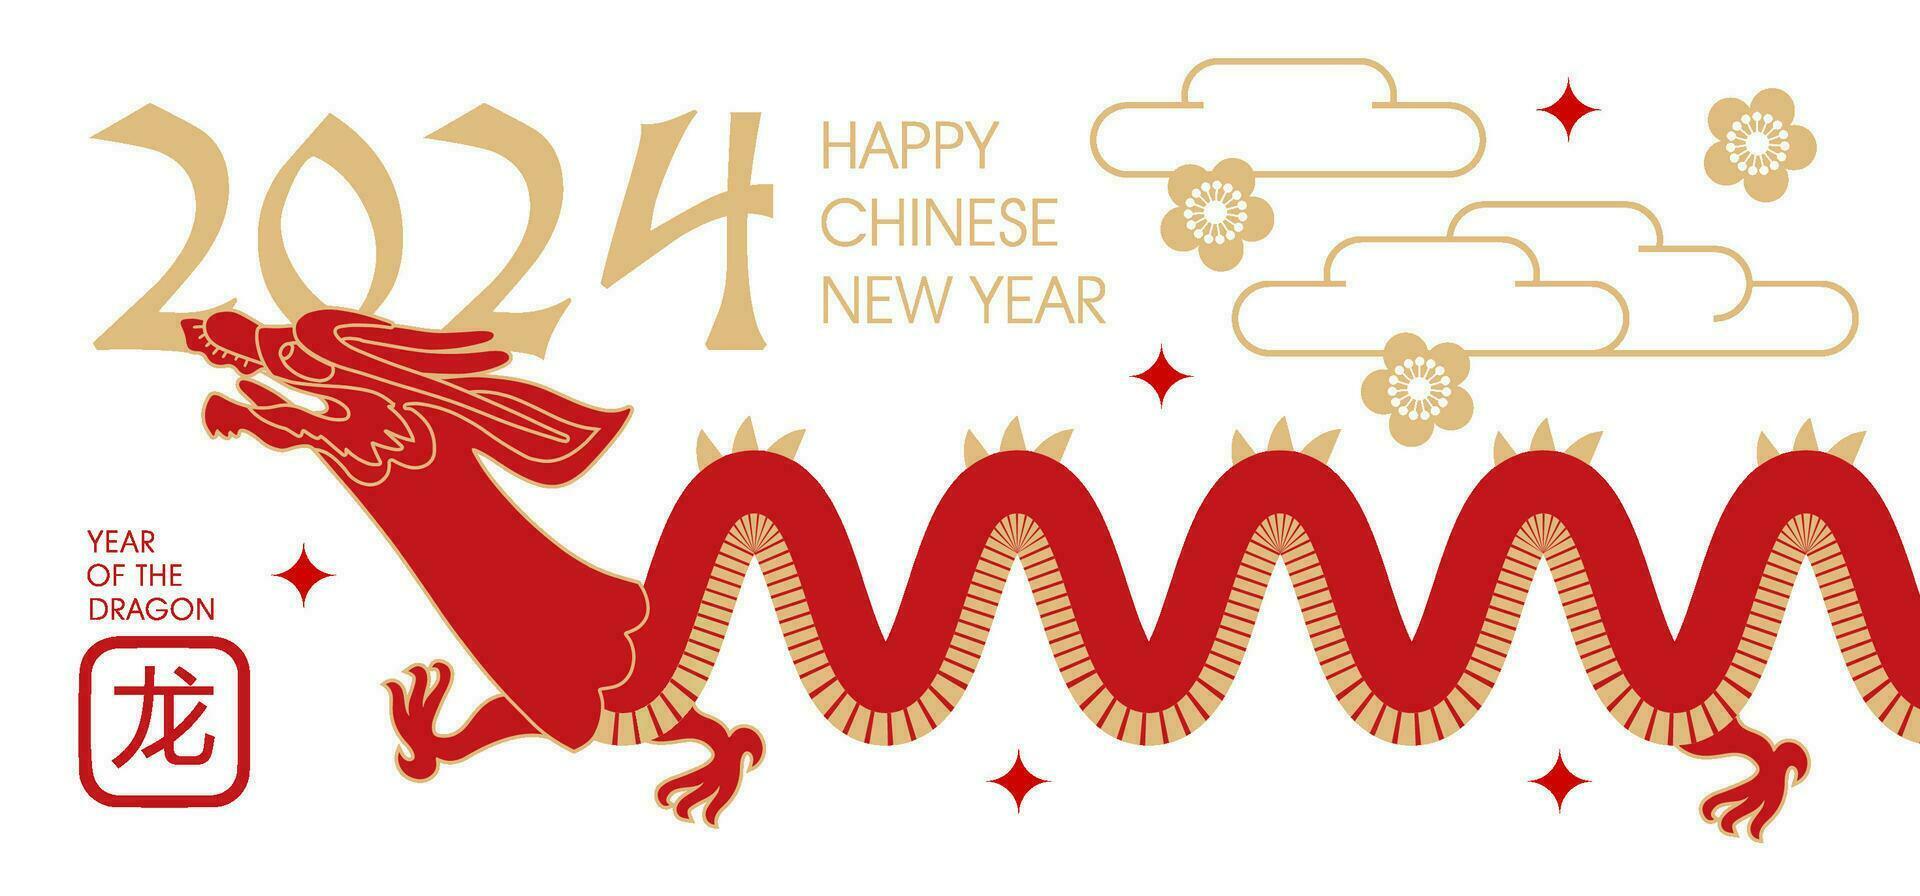 minimalista masa para 2024 chino nuevo año, año de el continuar. chino zodíaco continuar en sencillo plano estilo. de moda vector ilustración. jeroglífico Traducción continuar.